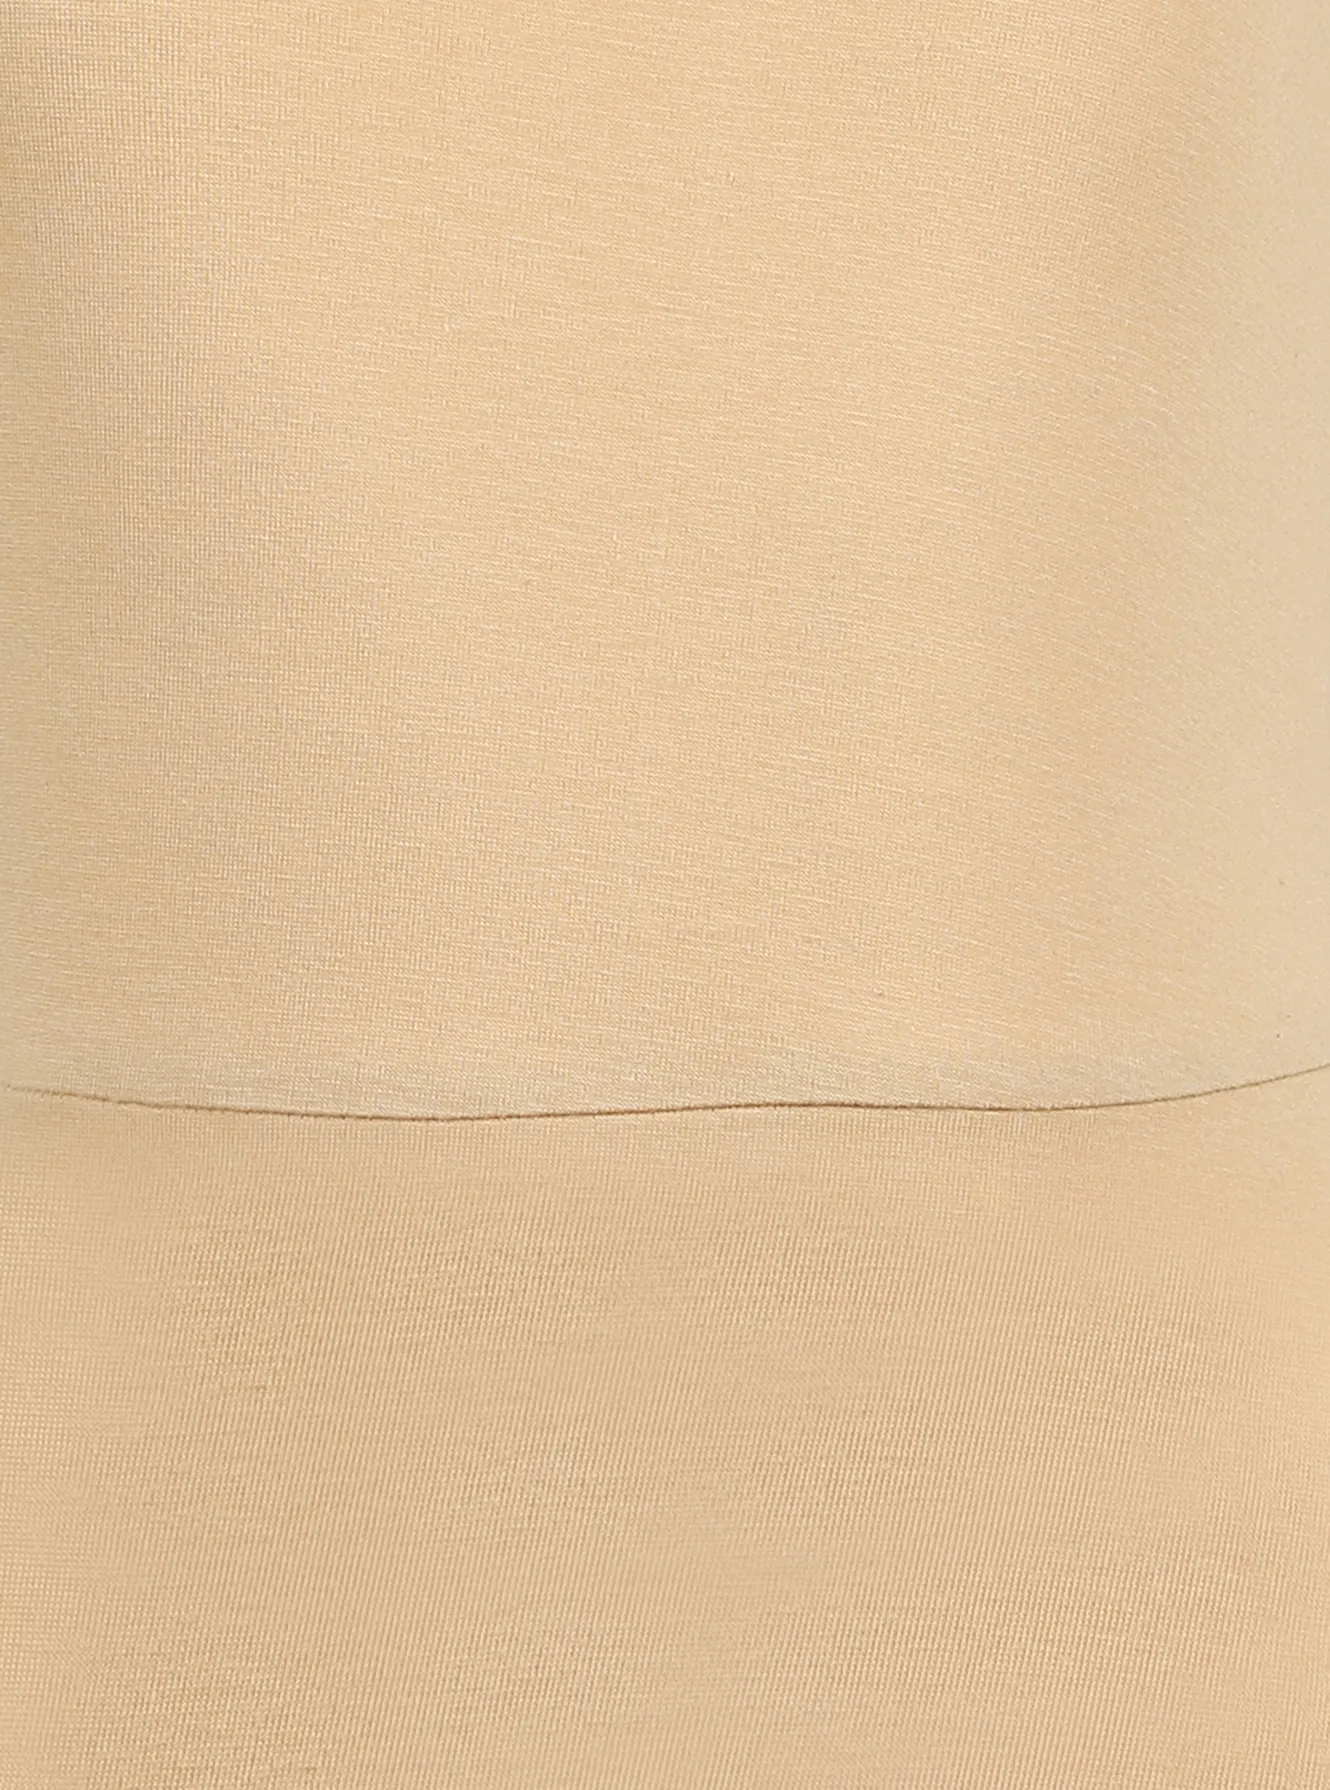 Deep neckline modern fit cotton camisole